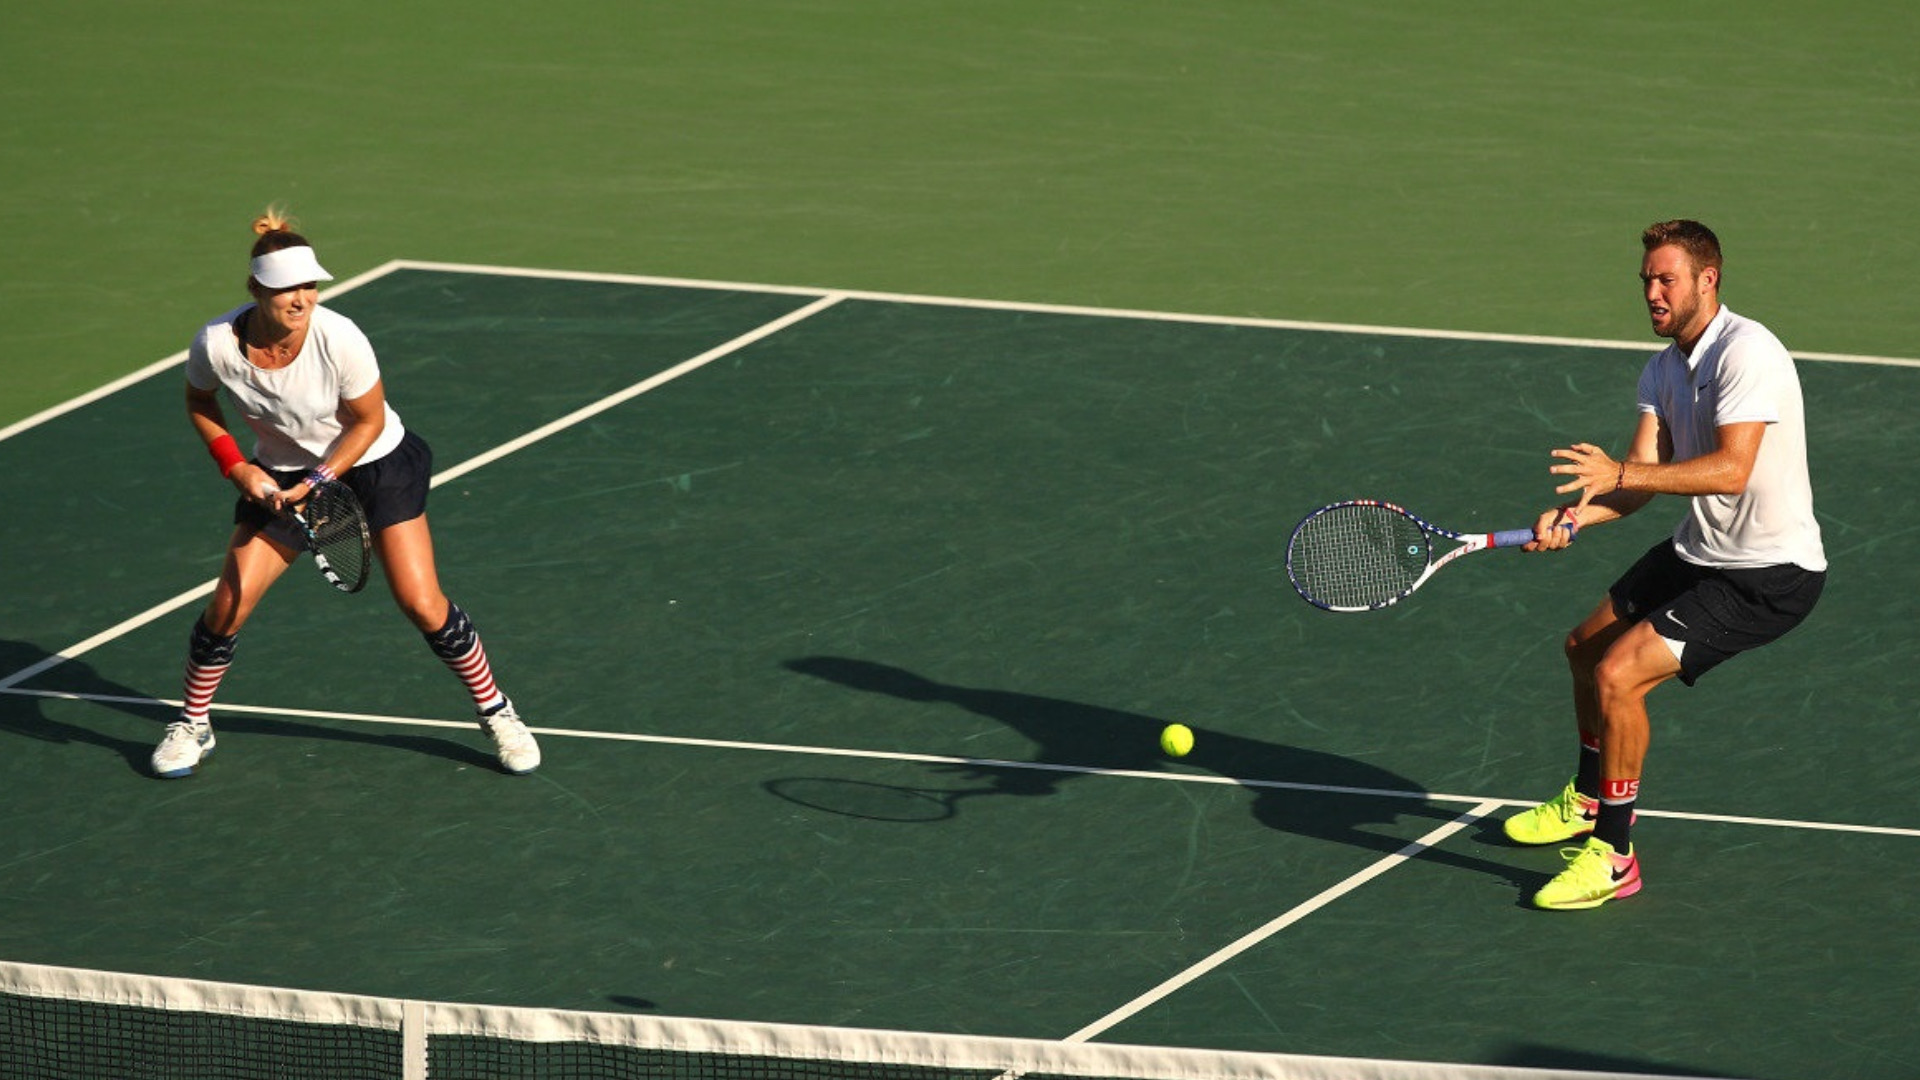 Теннисный игрок. Большой теннис. Игра в теннис. Вид спорта теннис. Спорт большой теннис.